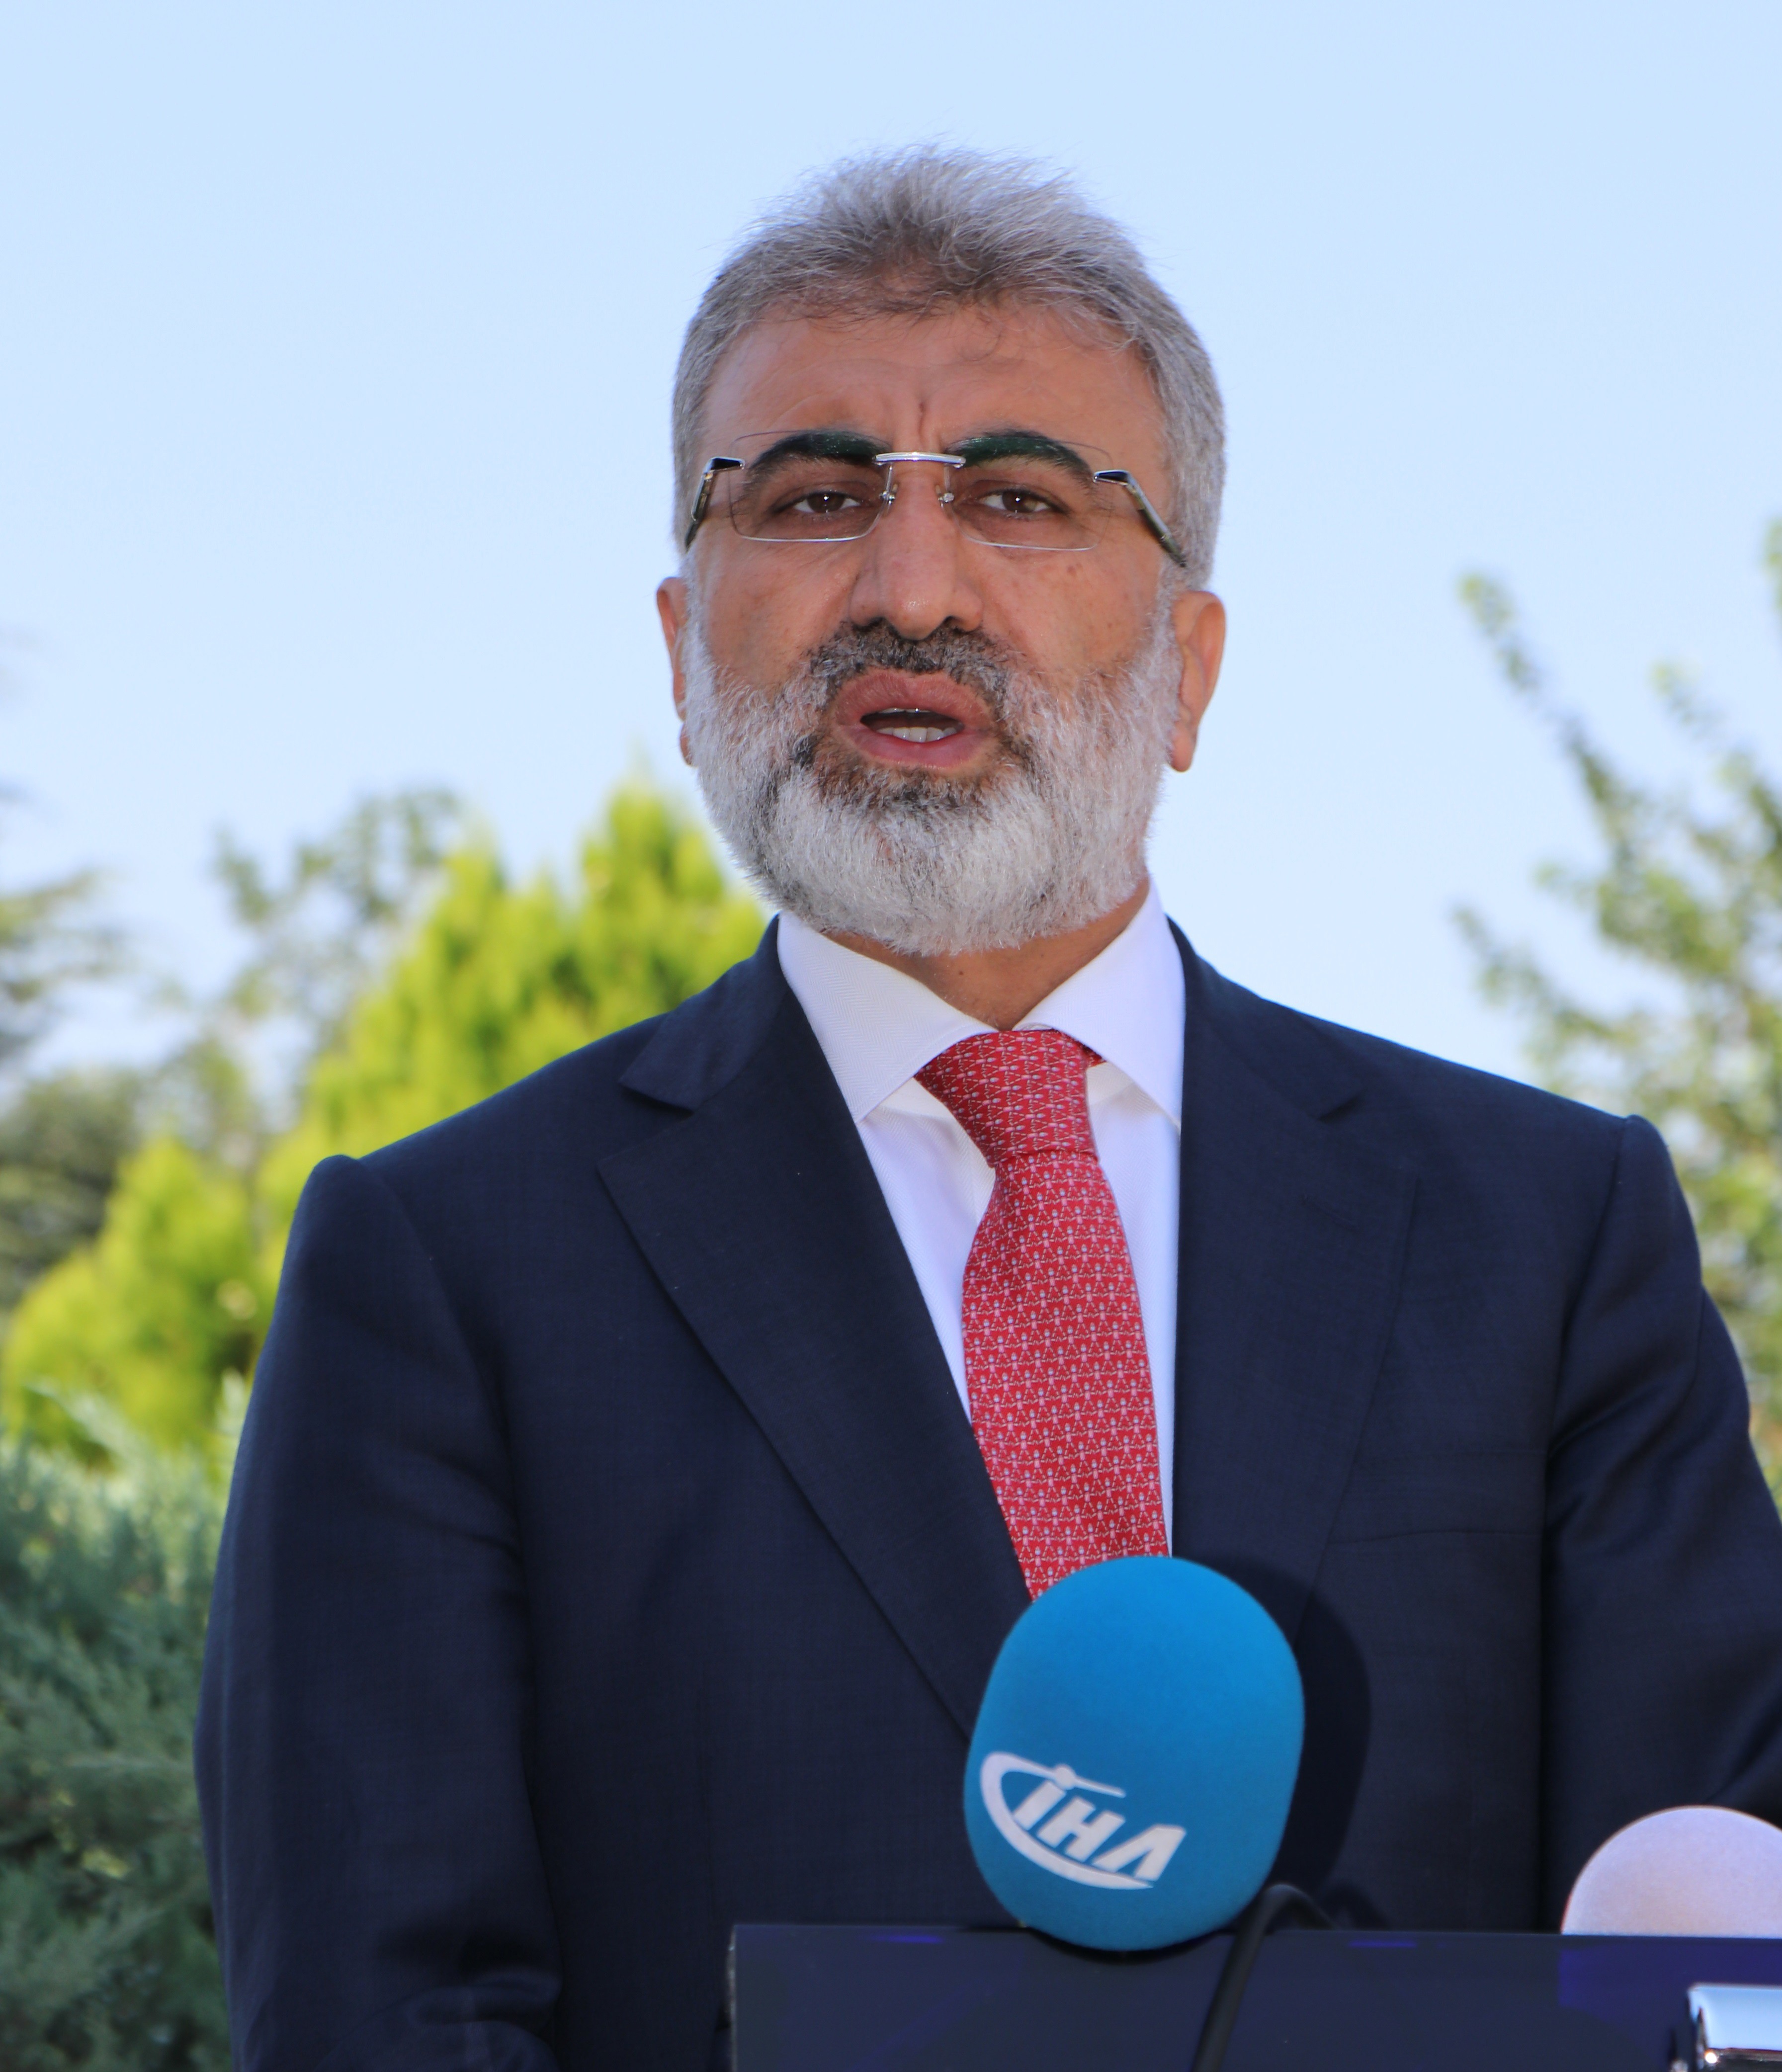 Taner Yıldız: ”Kürt devletinin kurulmasına müsamaha gösterilemez”